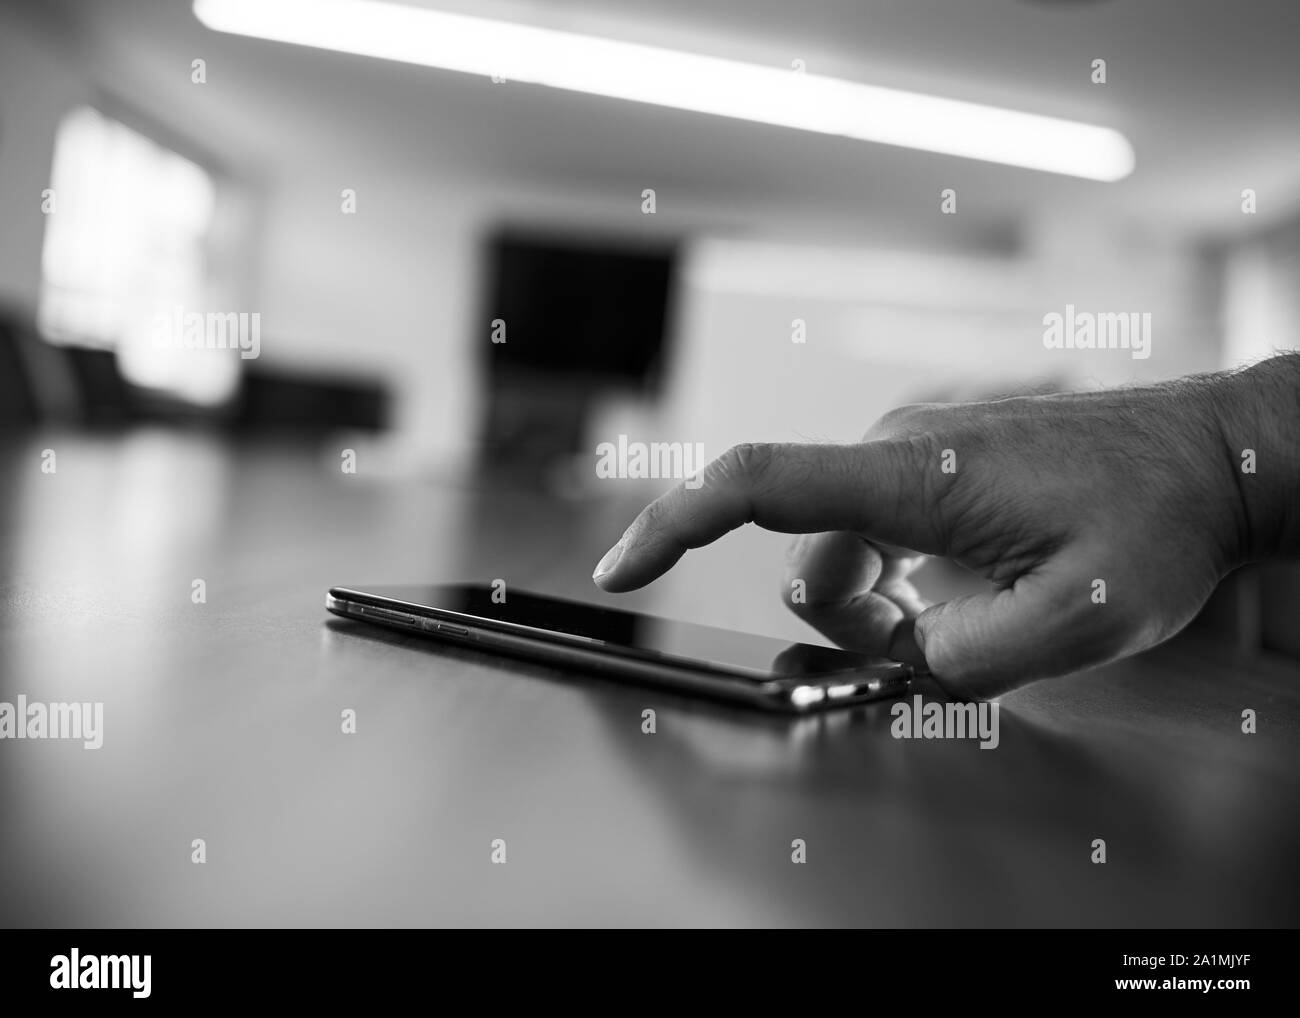 Un homme de race blanche part à l'aide d'un smartphone noir dans un bureau salle de réunion salle de réunion. Banque D'Images